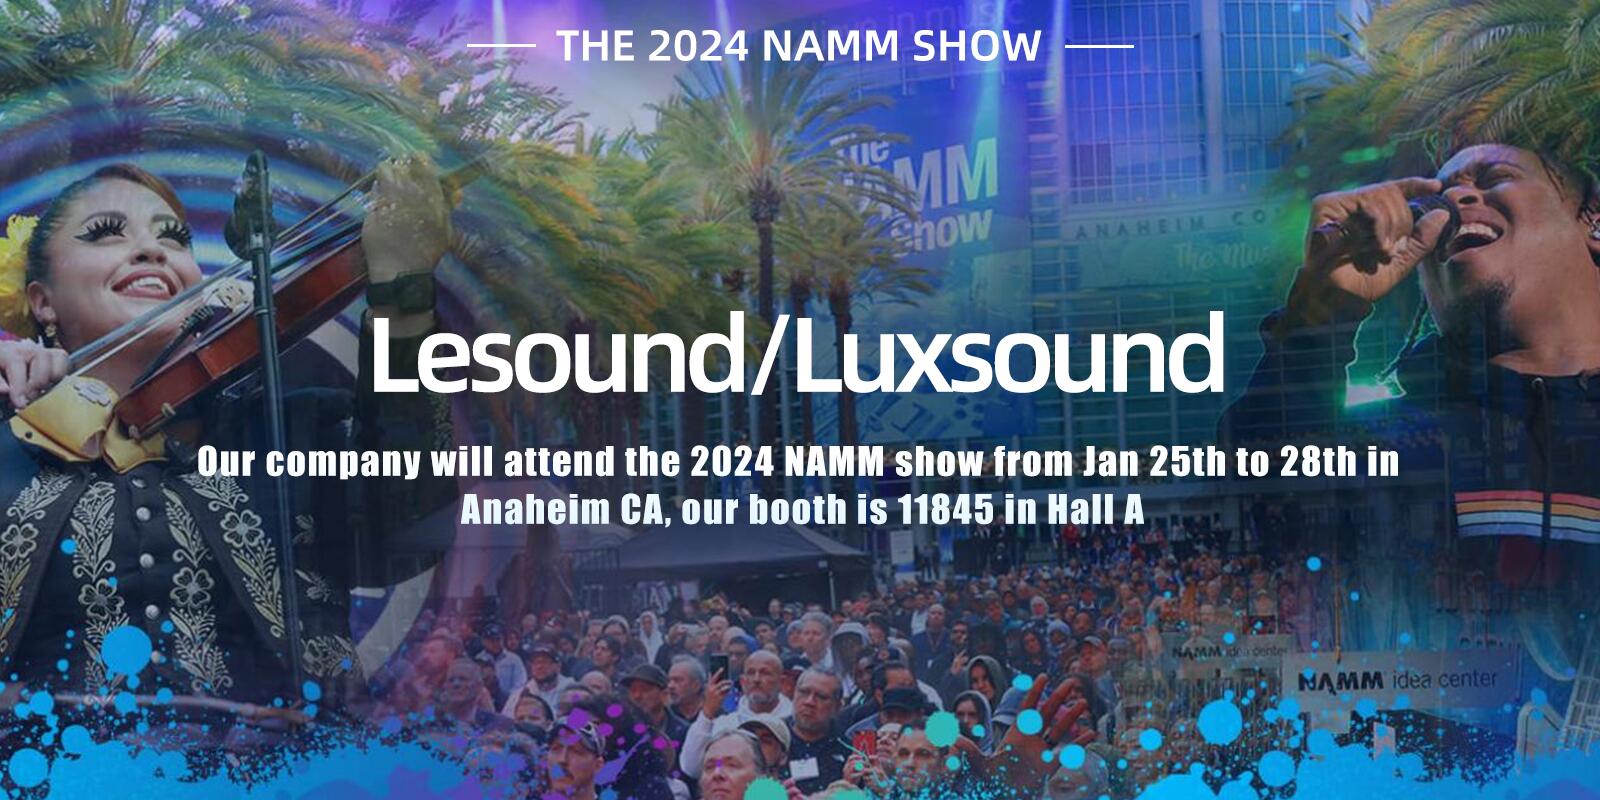 लेसाउंड/लक्ससाउंड 25 जनवरी से 28 जनवरी तक अनाहेम सीए में 2024 NAMM शो में भाग लेने जा रहा है